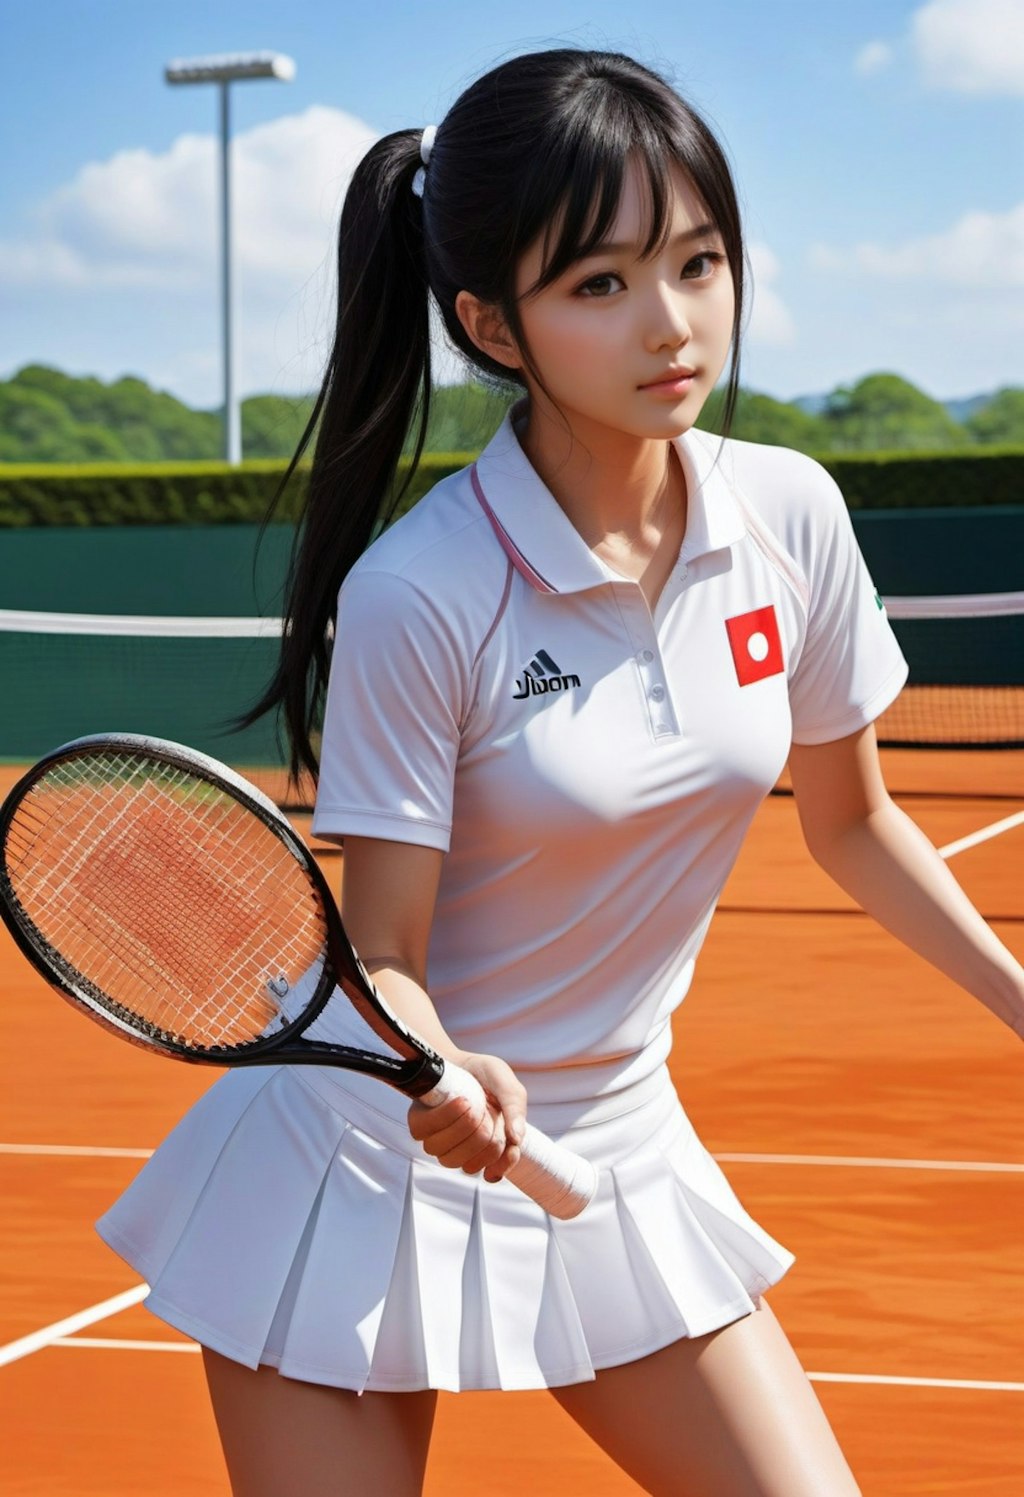 テニス美少女集